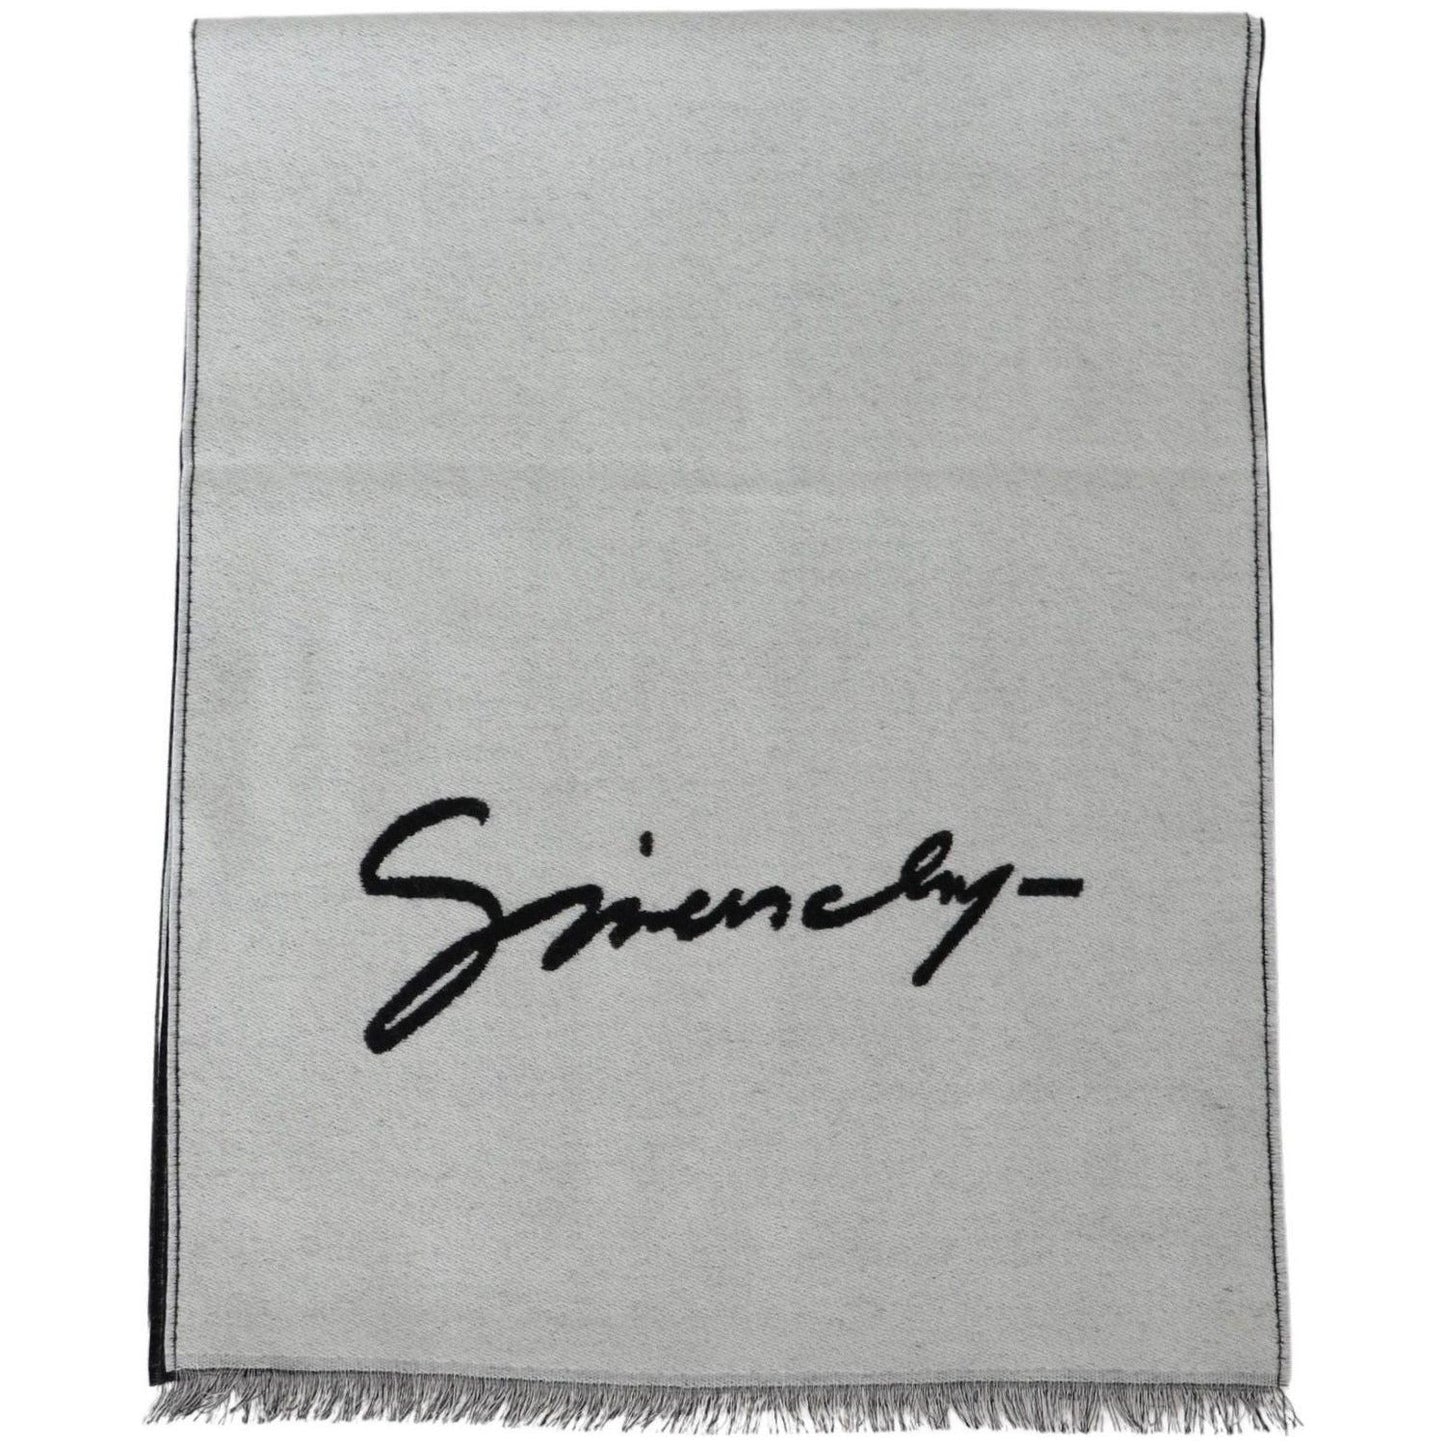 Givenchy Elegant Monochrome Wool-Silk Blend Scarf Wool Wrap Shawls black-white-wool-unisex-winter-warm-scarf-wrap-shawl IMG_7462-ce818ce3-ad5.jpg